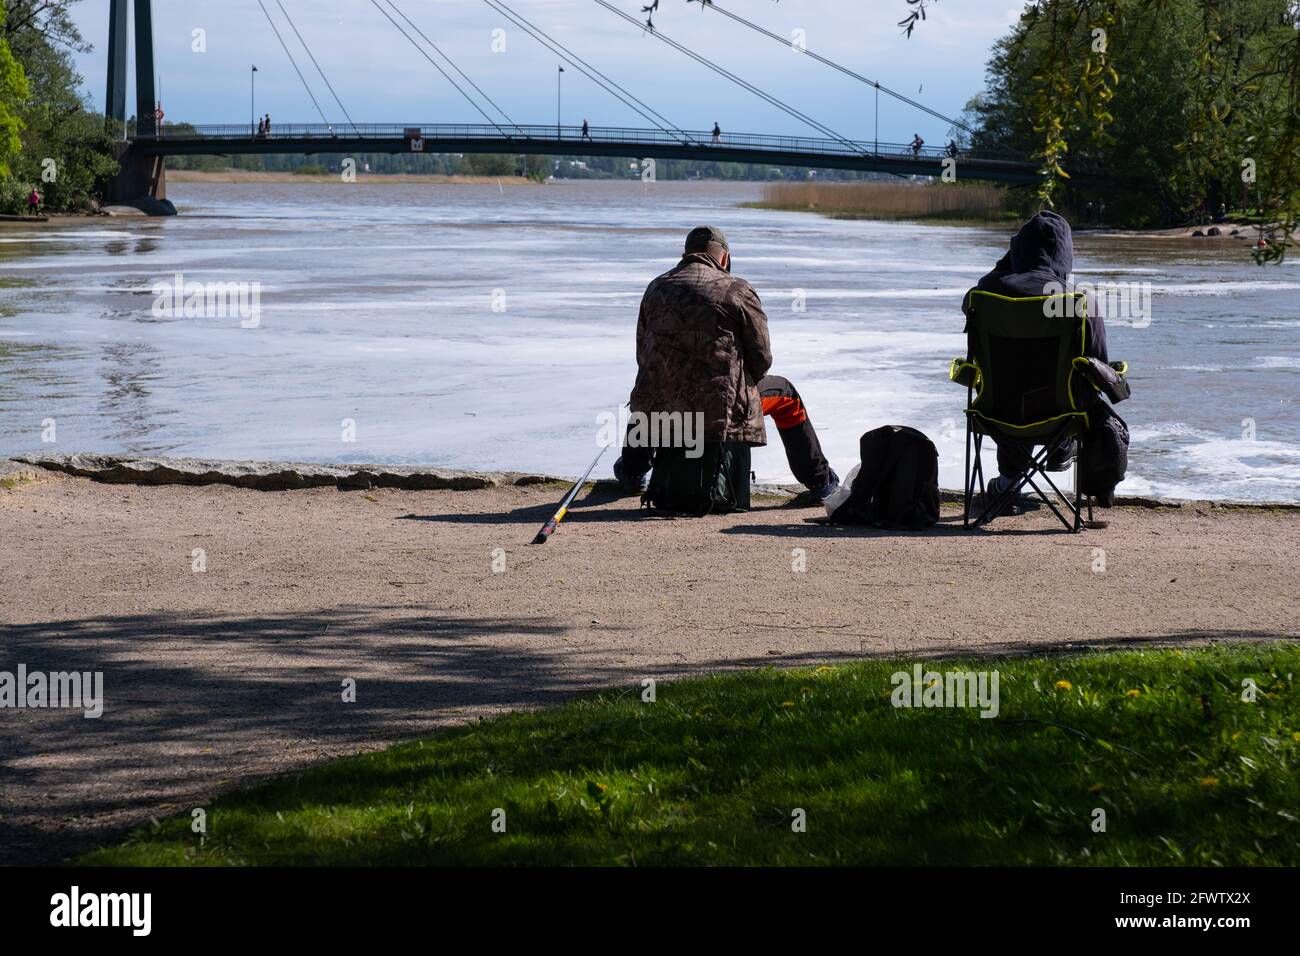 Helsinki / FINLANDIA - 22 DE MAYO de 2021: Dos hombres sentados en la pesca de la costa. Arroyo de agua que conduce hacia un puente peatonal. Foto de stock